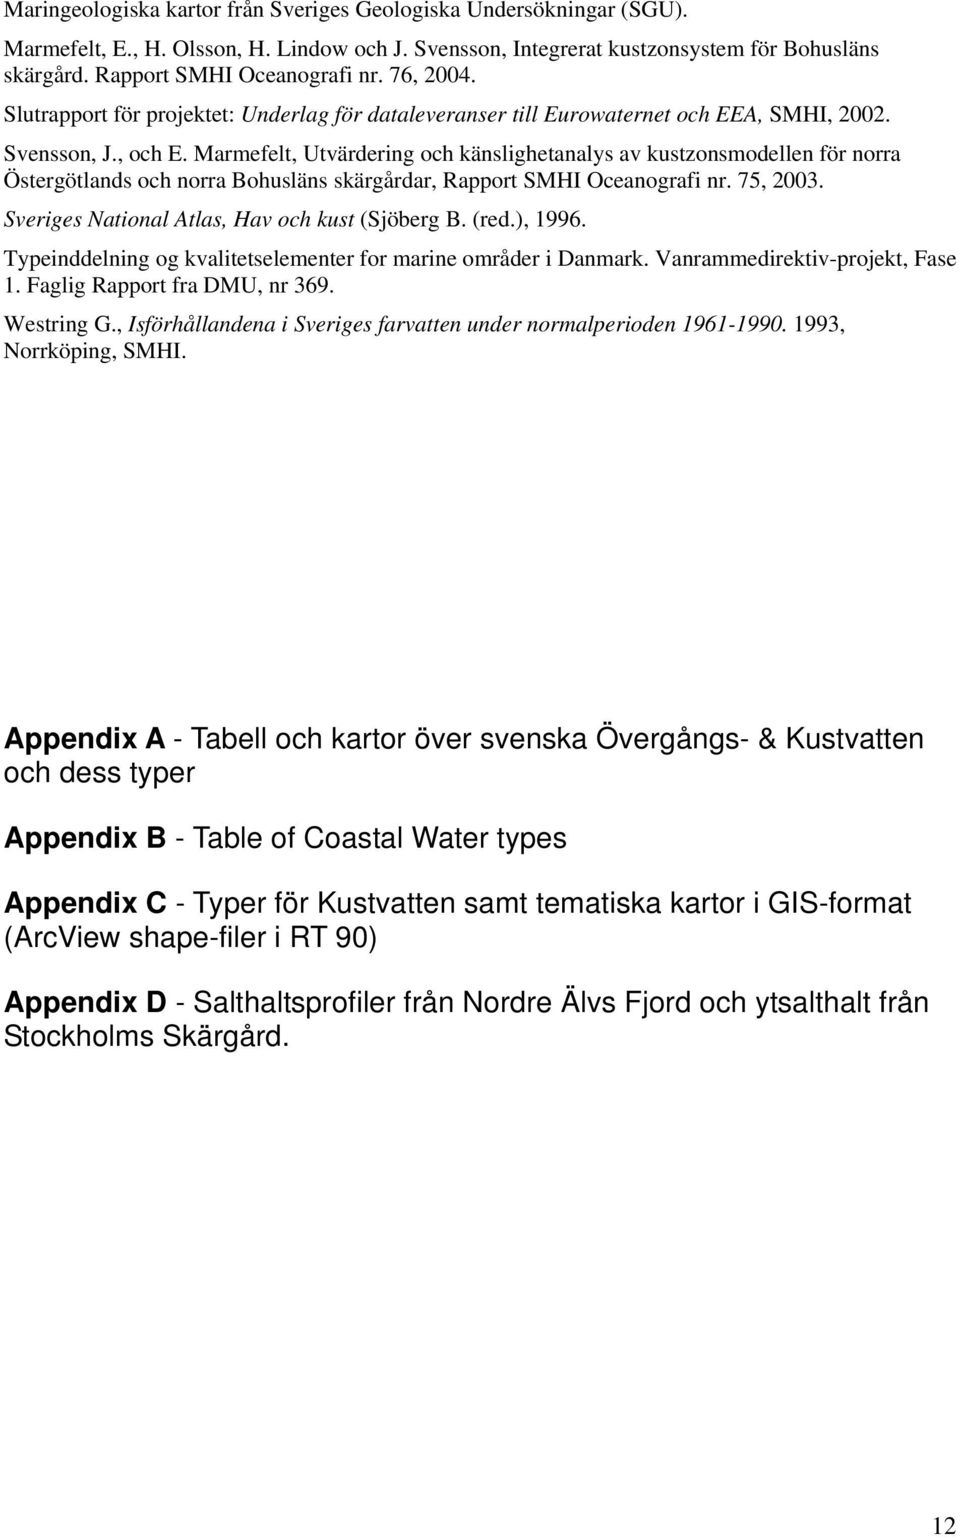 Marmefelt, Utvärdering och känslighetanalys av kustzonsmodellen för norra Östergötlands och norra Bohusläns skärgårdar, Rapport SMHI Oceanografi nr. 75, 2003.